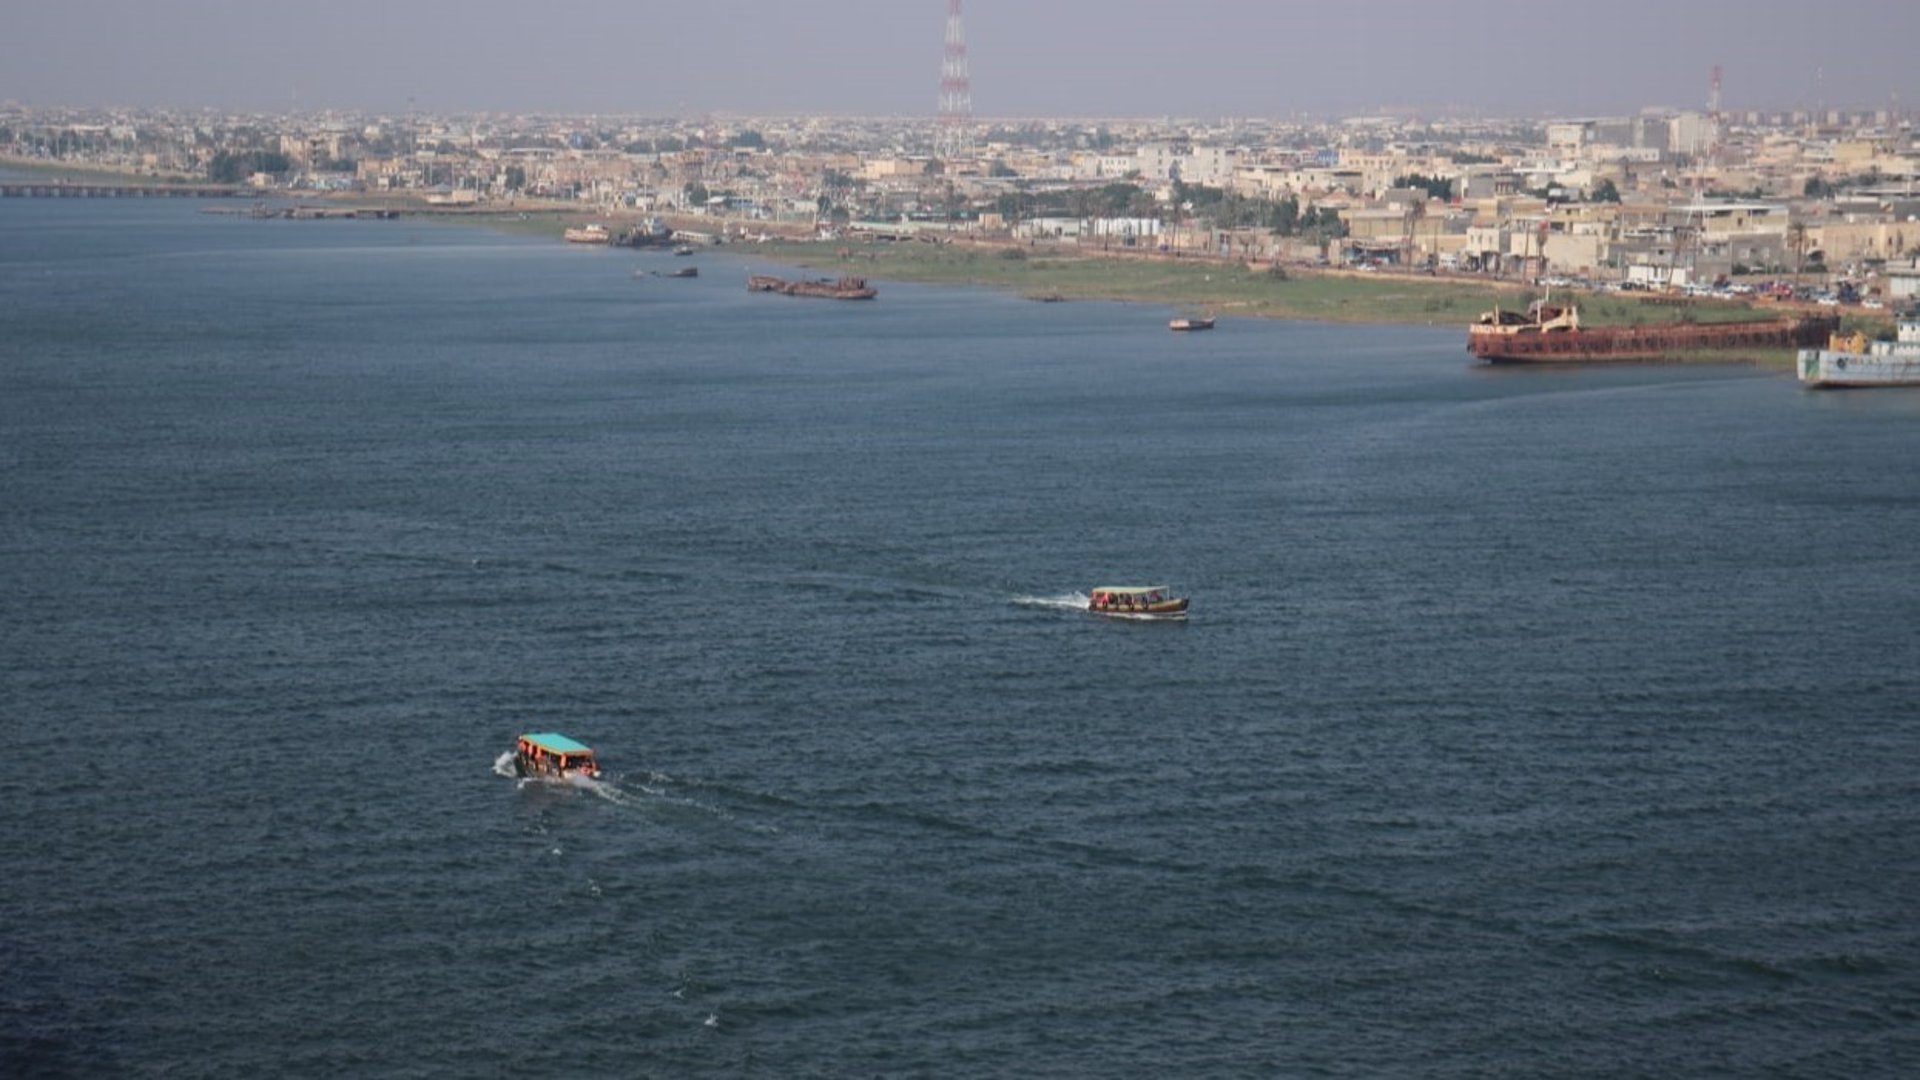 حال البحر: موج معتدل ورياح شمالية شرقية على شواطئ العراق في البصرة غداً الخميس